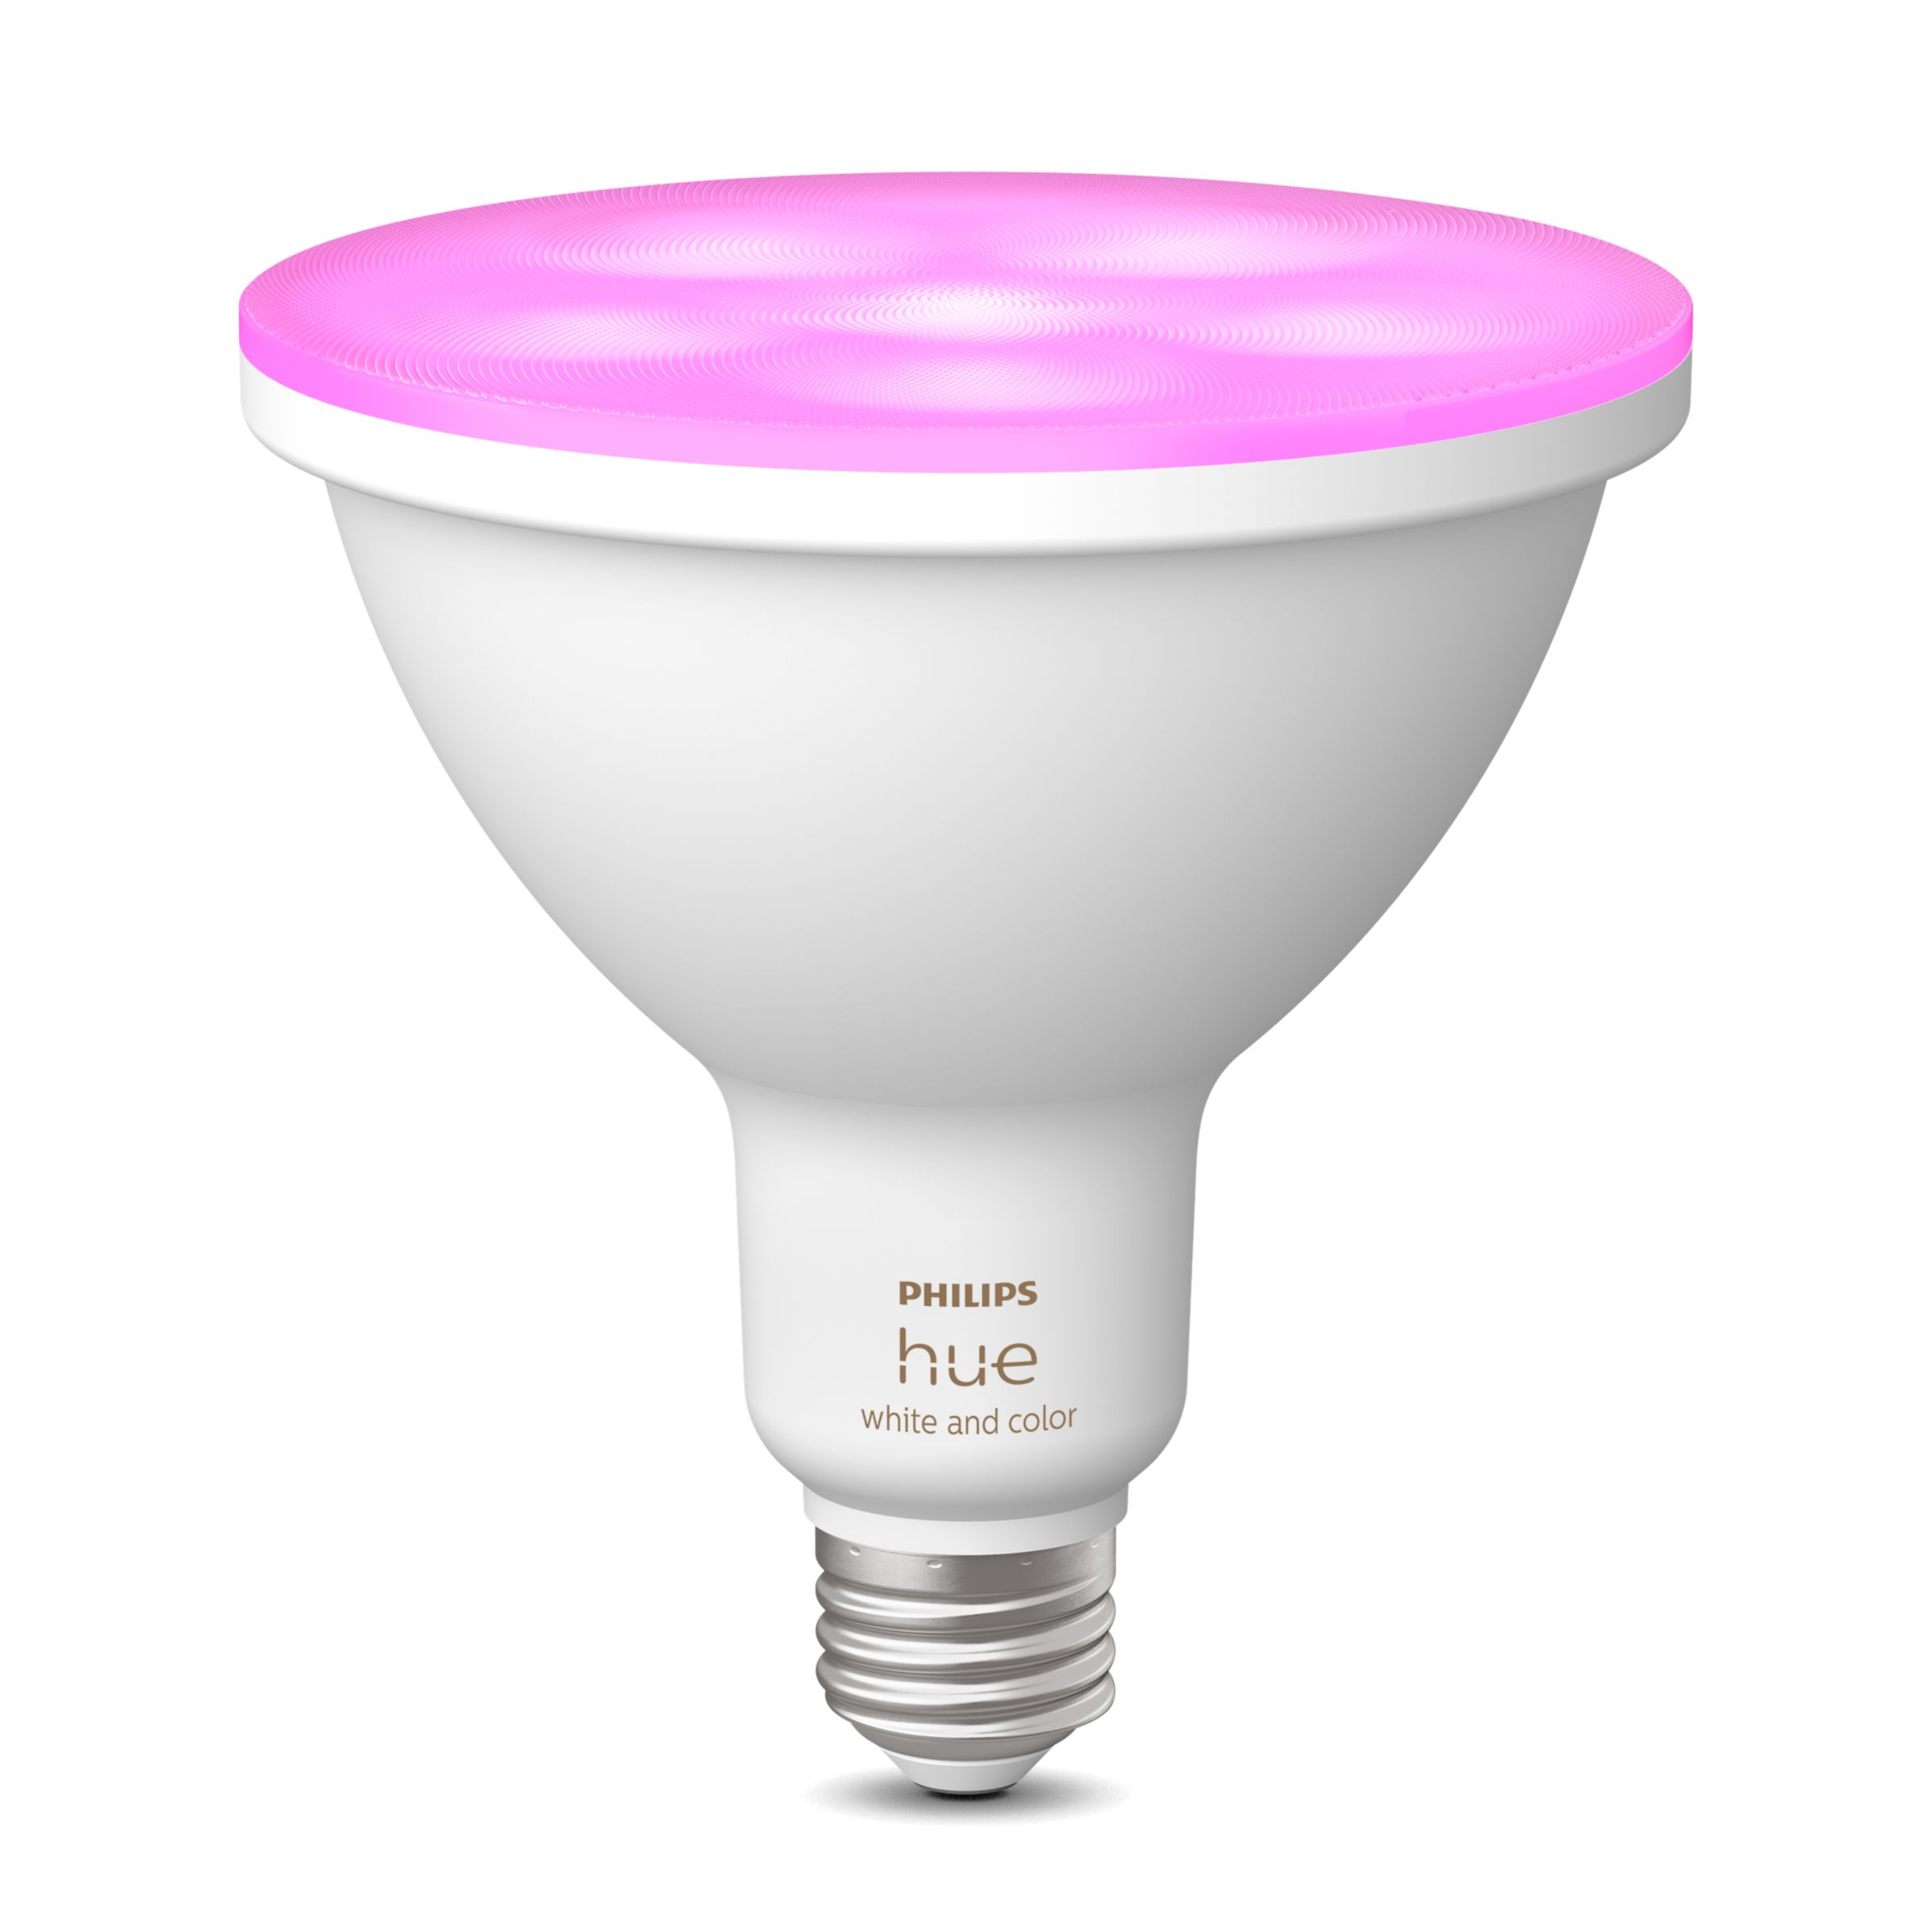 Hue White and color PAR38 - E26 smart bulb | Philips Hue